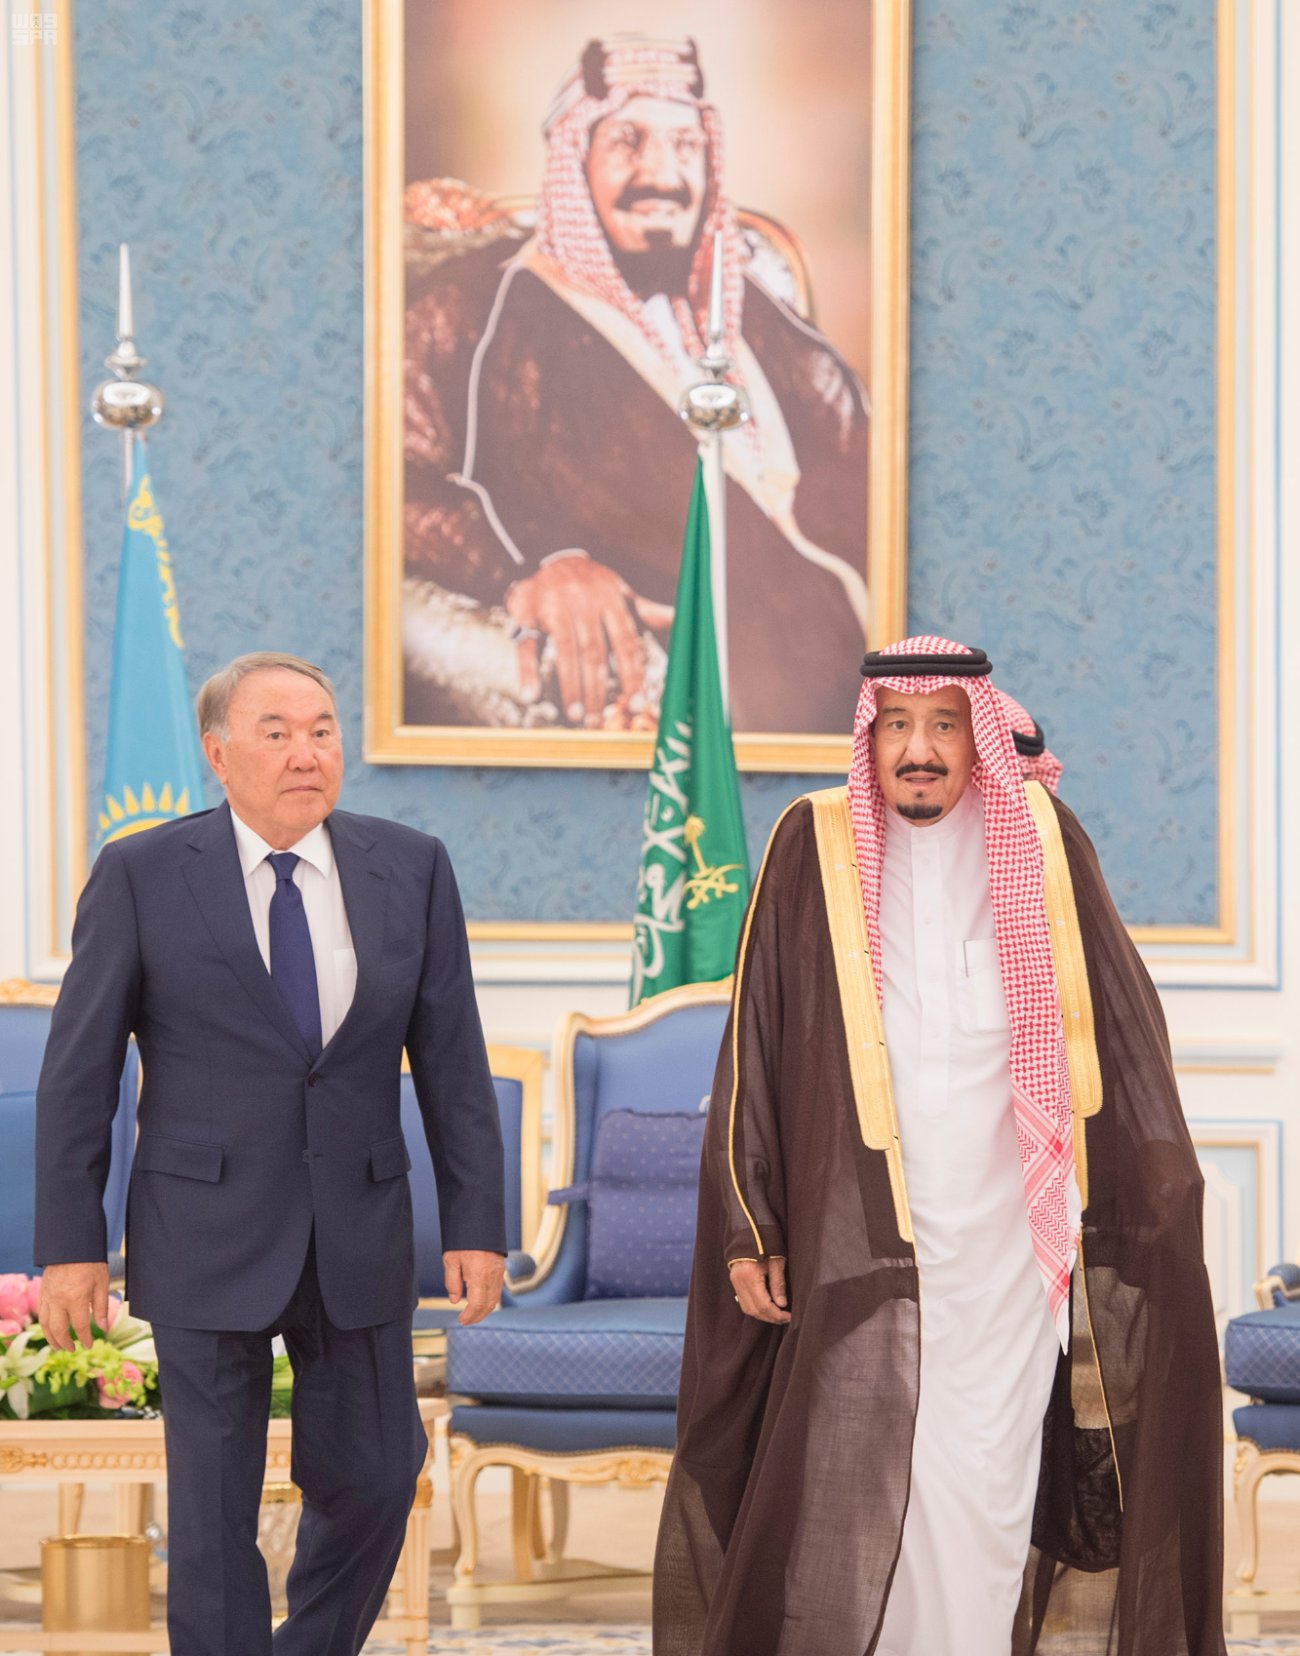 شاهد .. صور استقبال الملك لرئيس كازاخستان